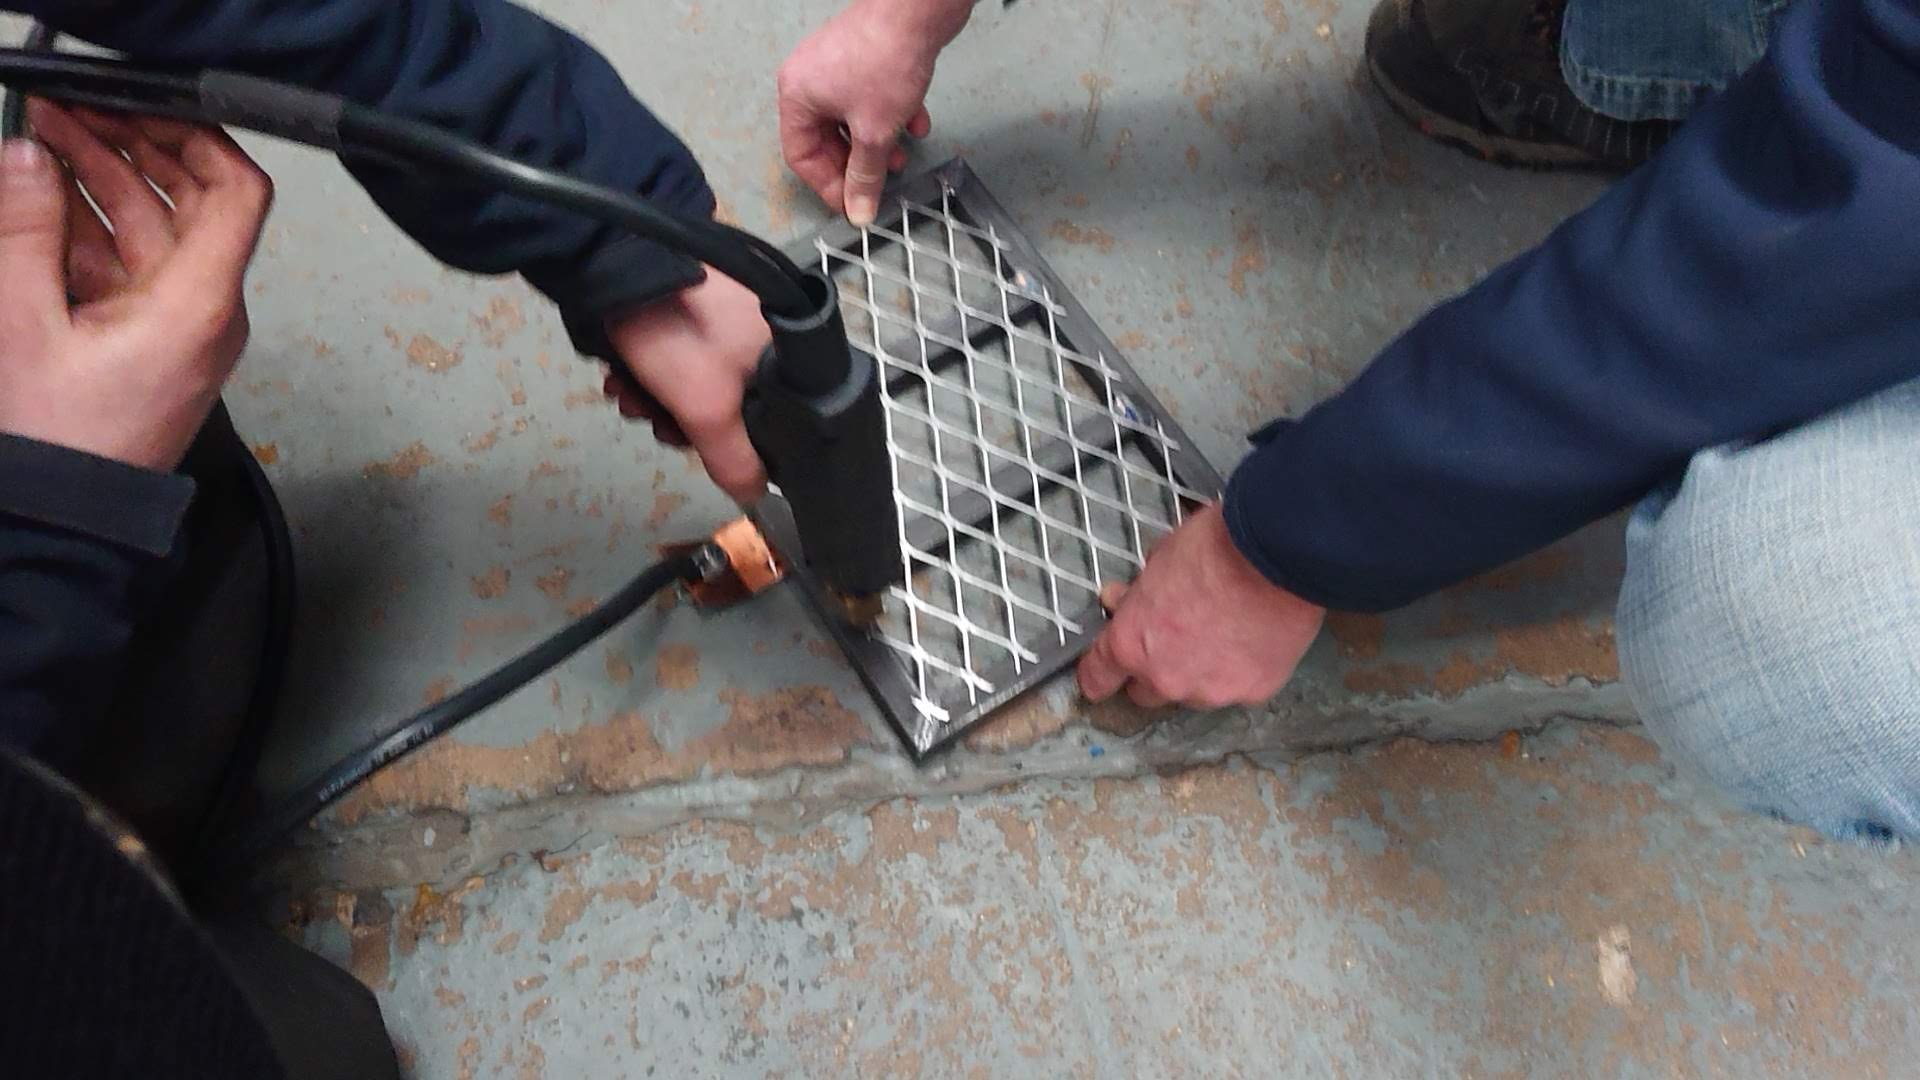 Poke welding of steel mesh grate